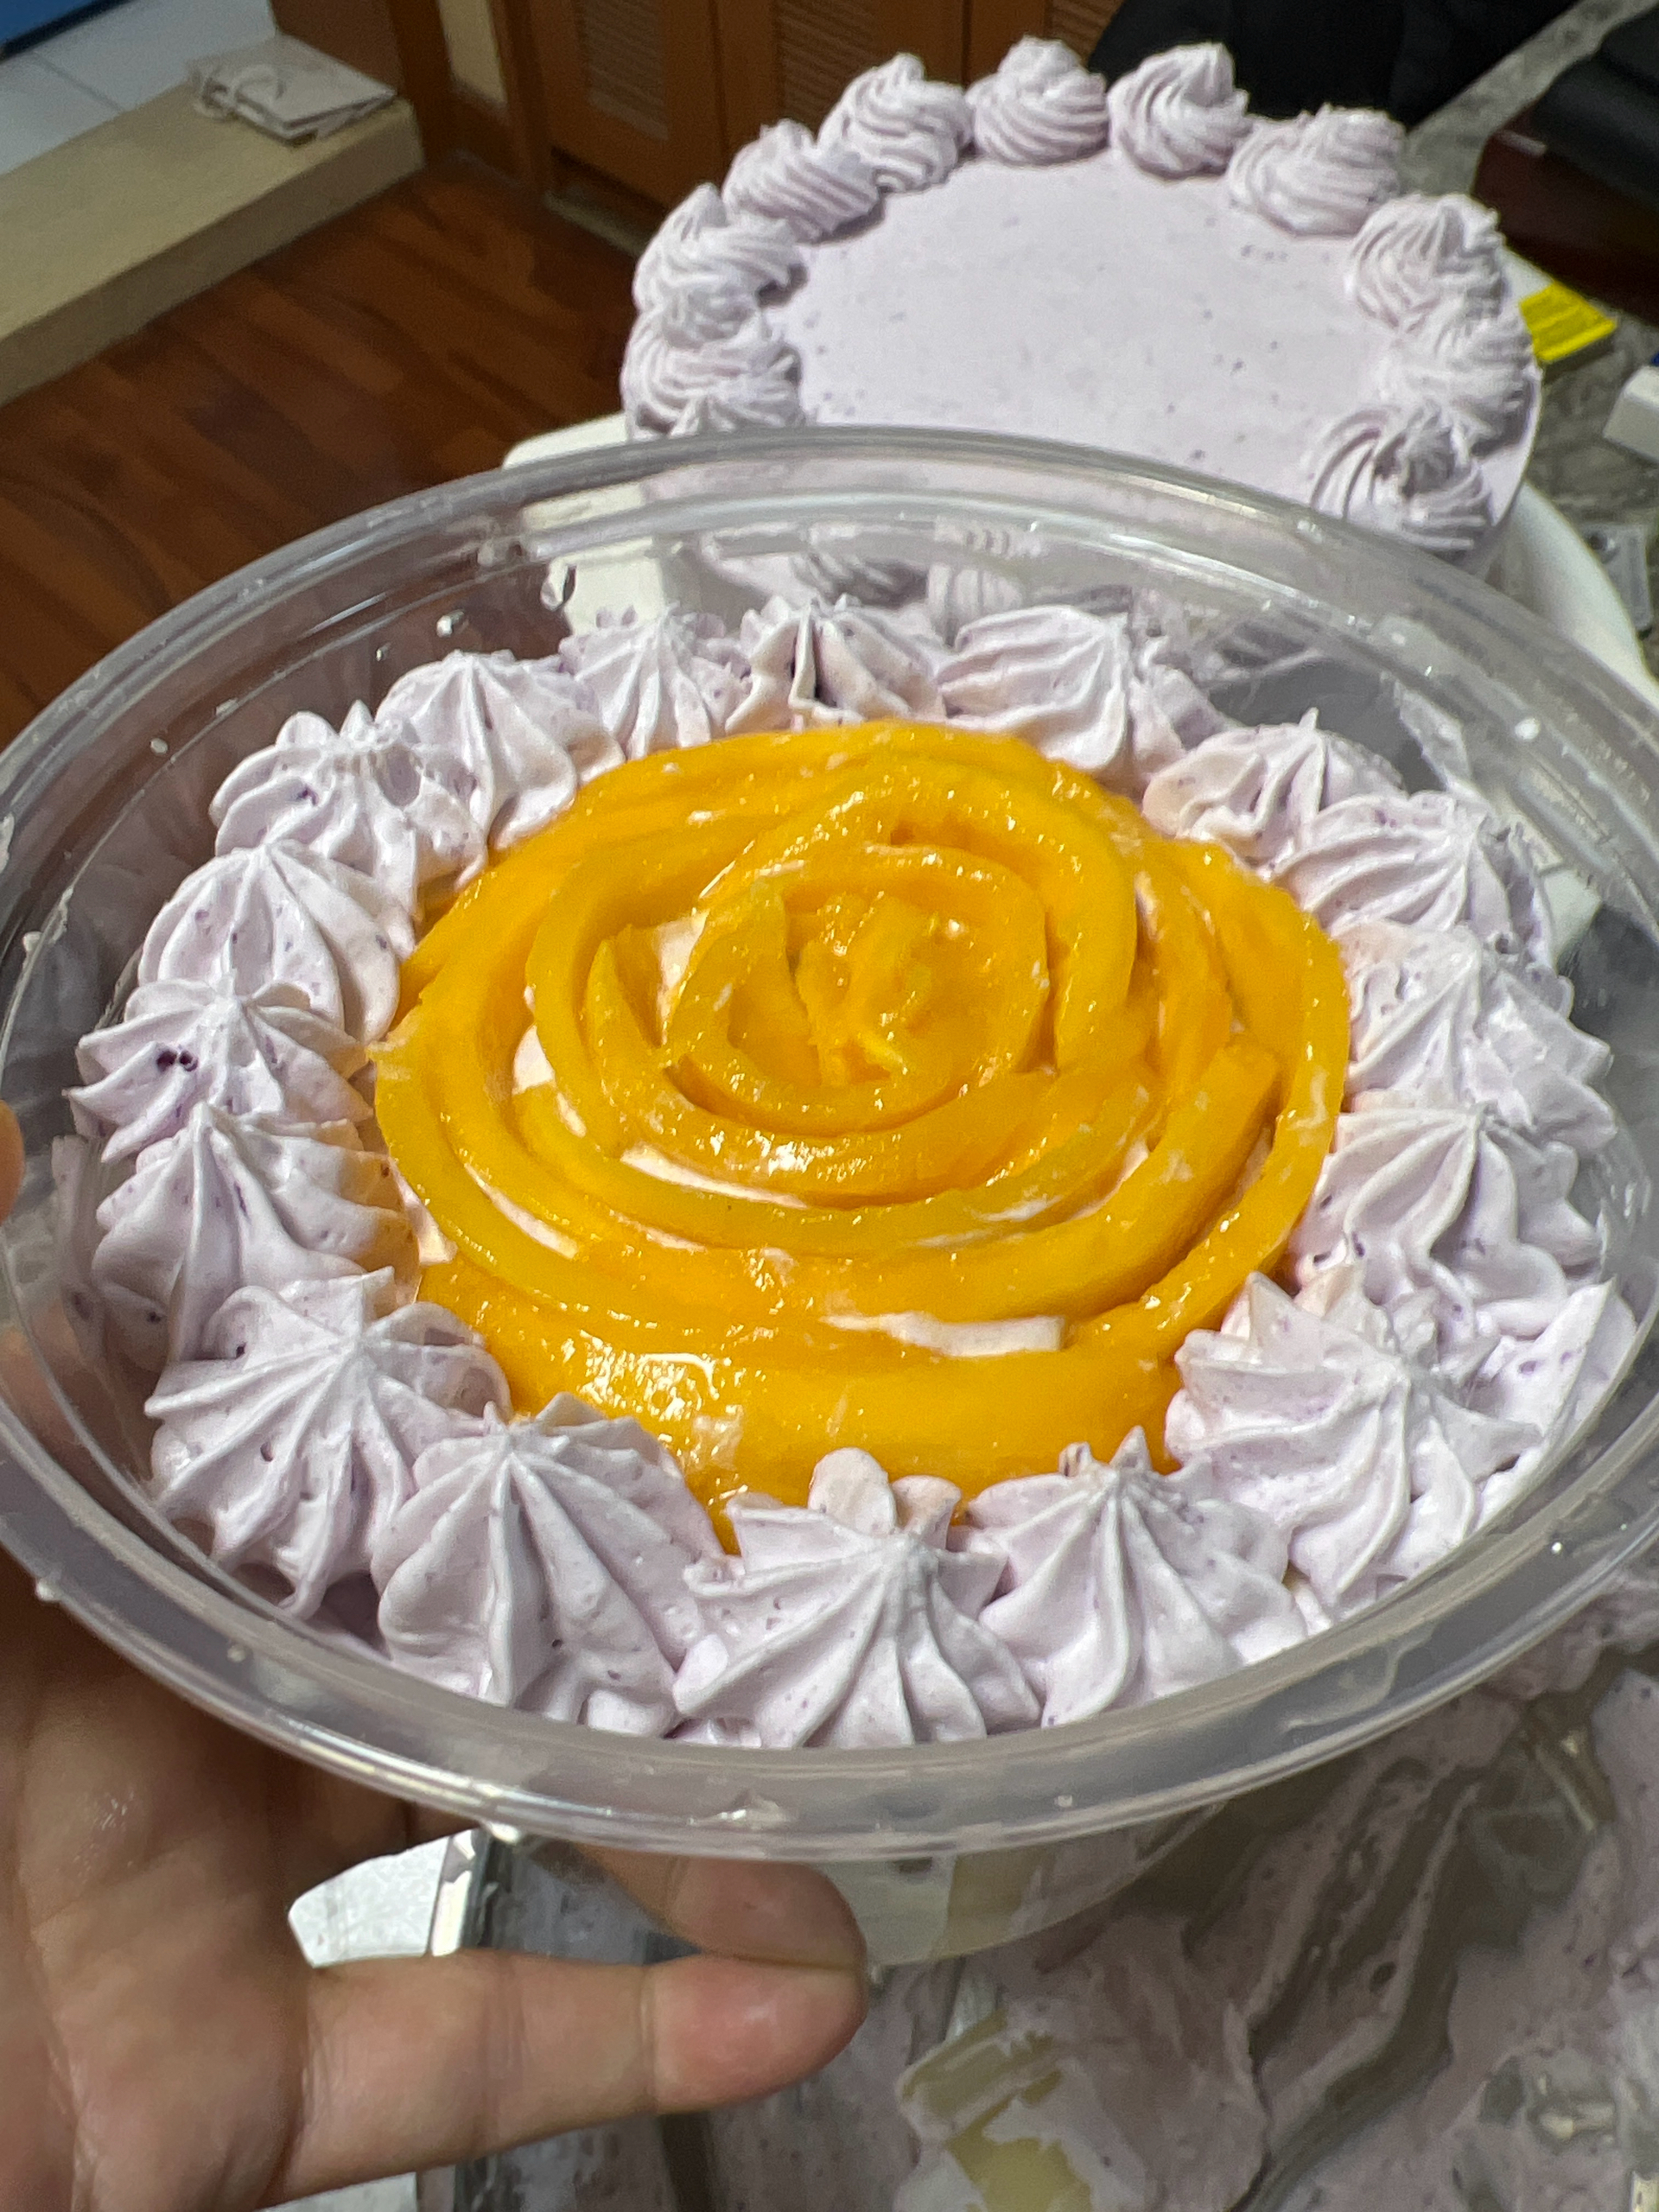 芋泥紫薯芒果蛋糕